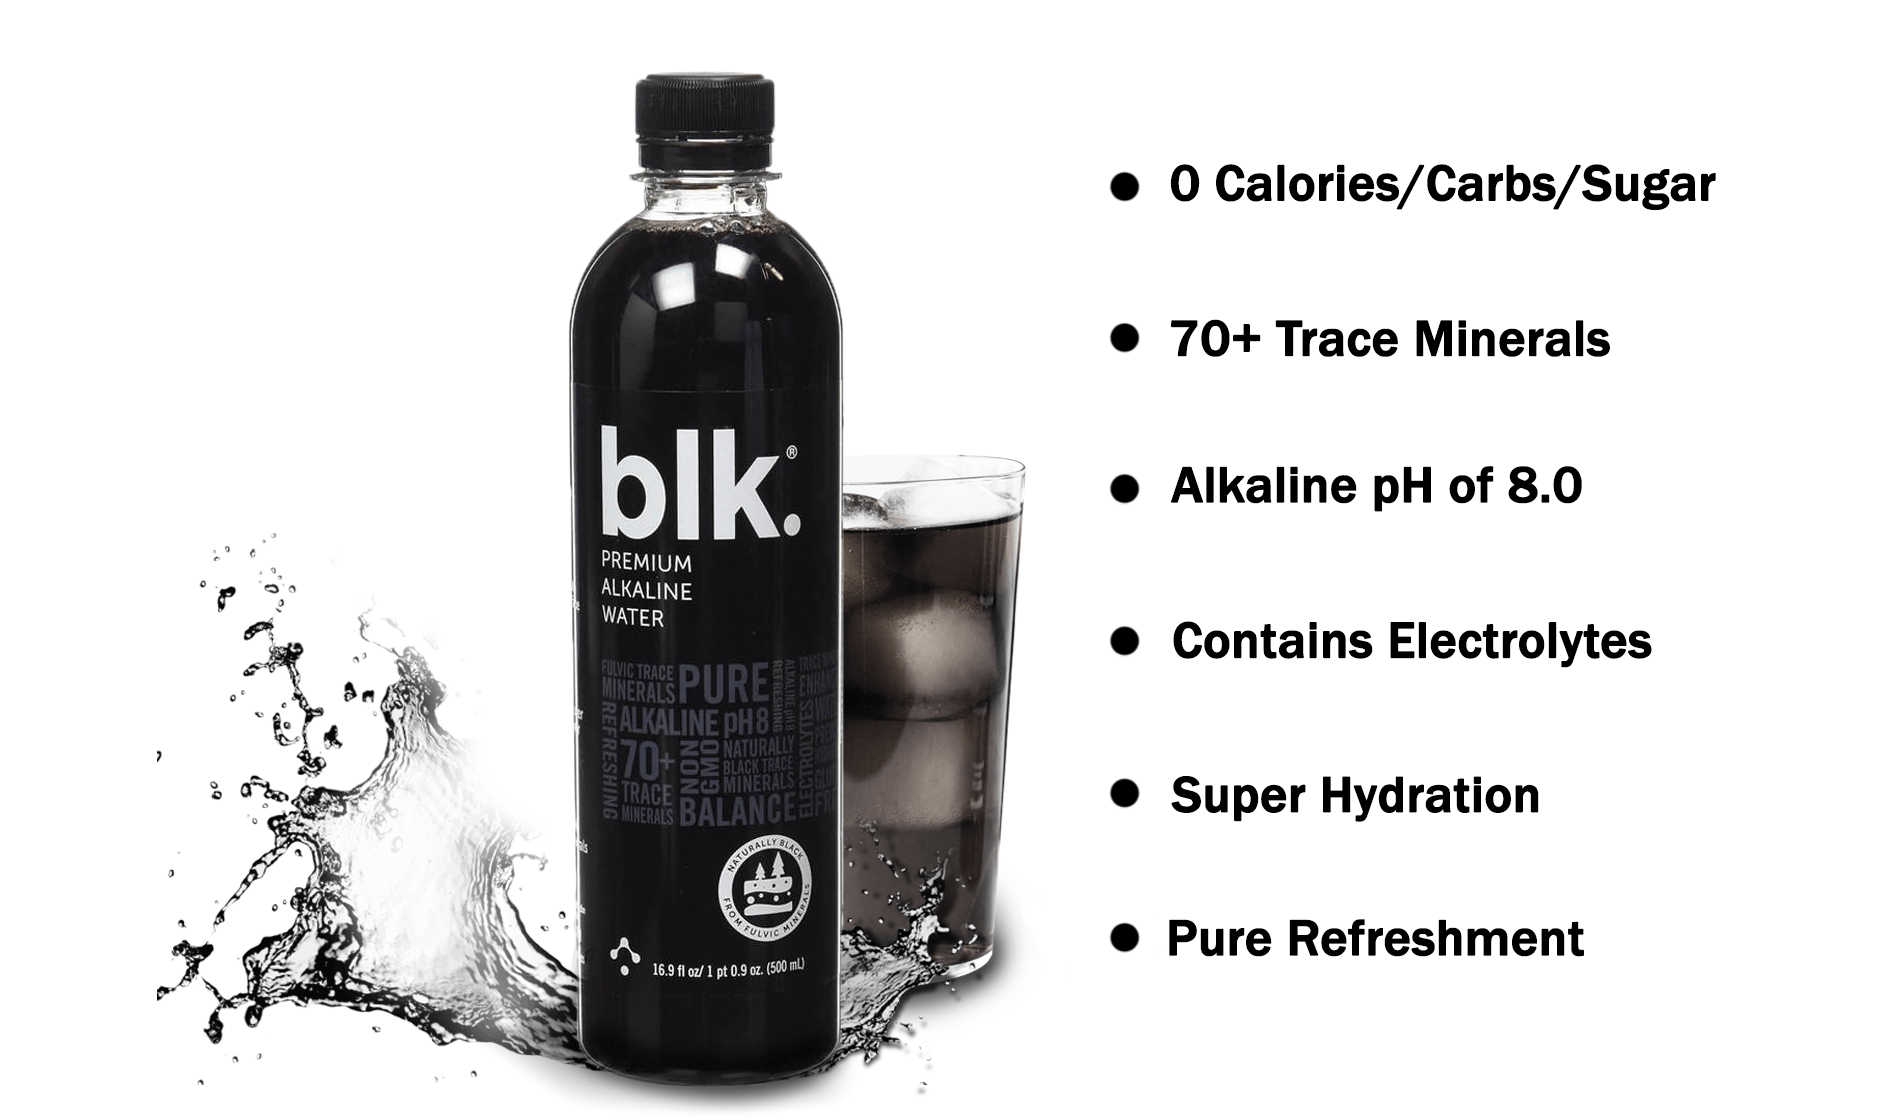 blk water benefits